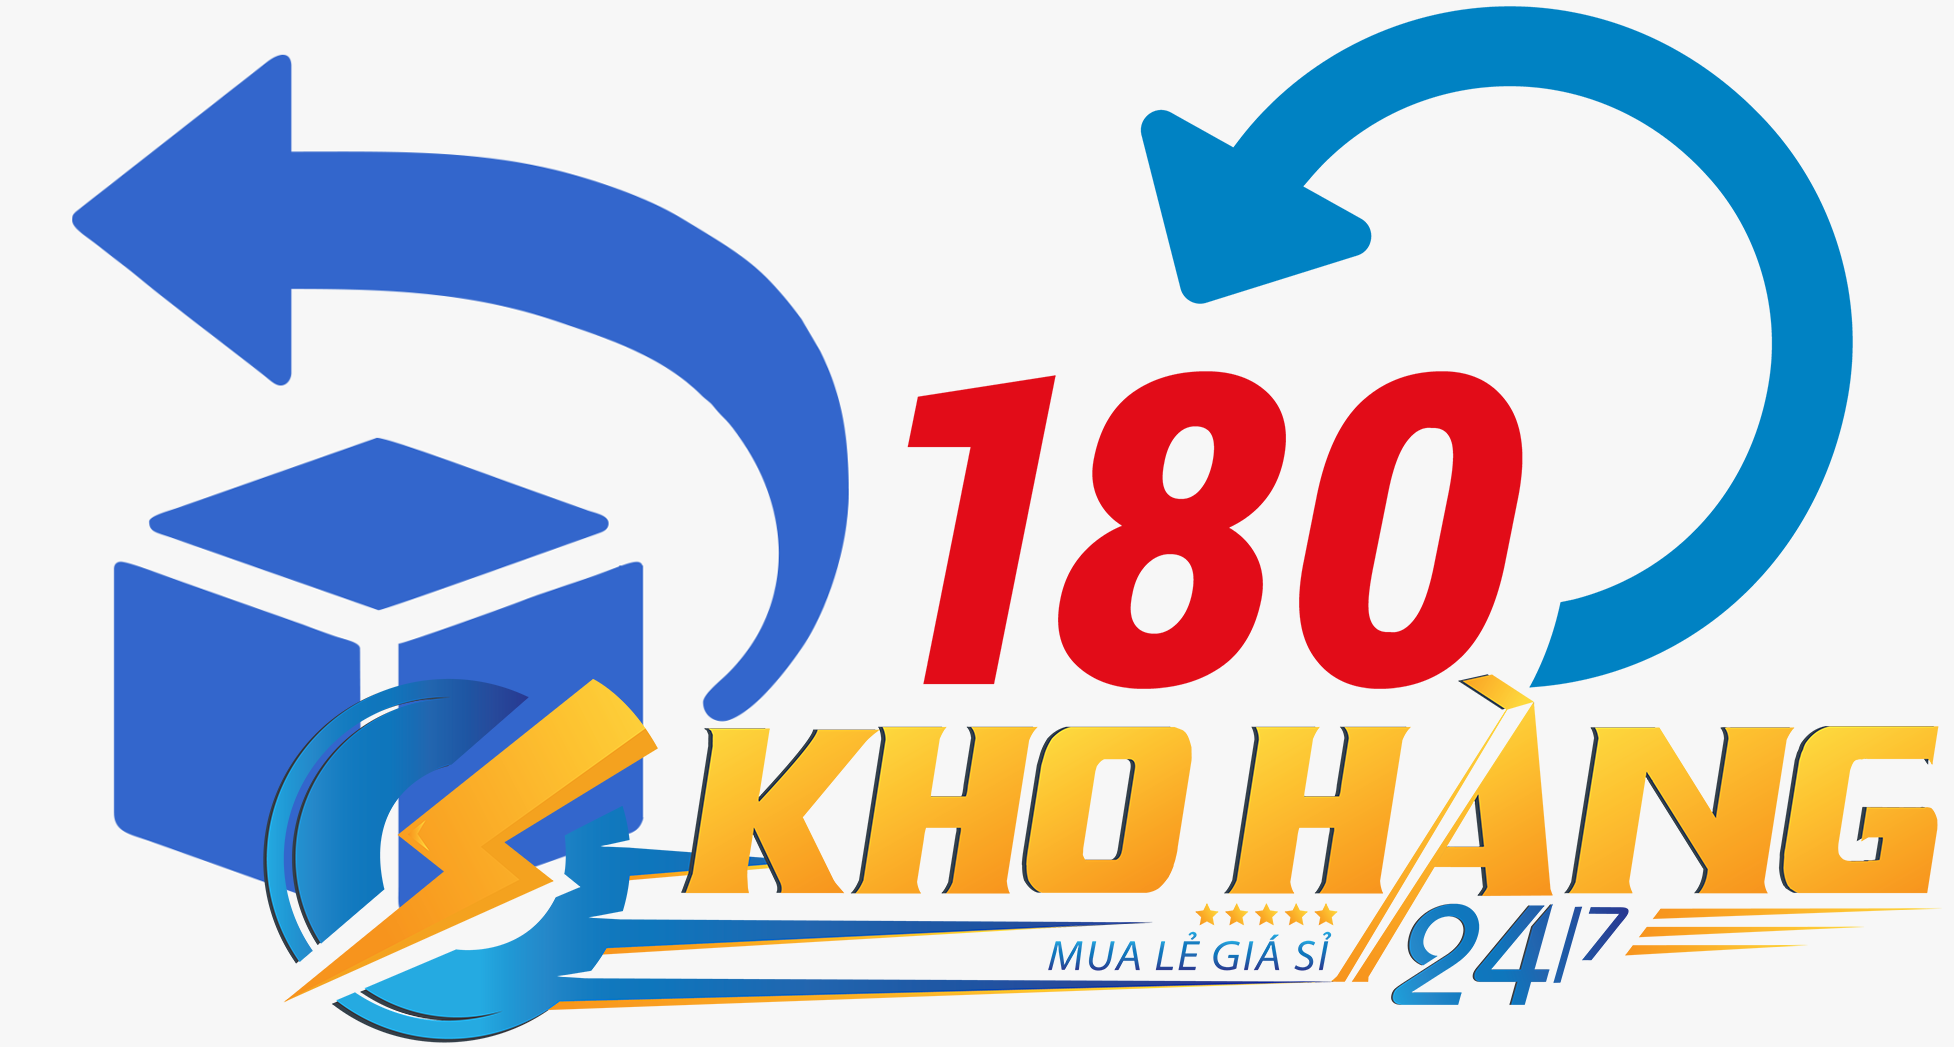 doi tra khohang247 - Tìm hiểu xe đạp điện giá rẻ dưới 5 triệu tại KhoHang247